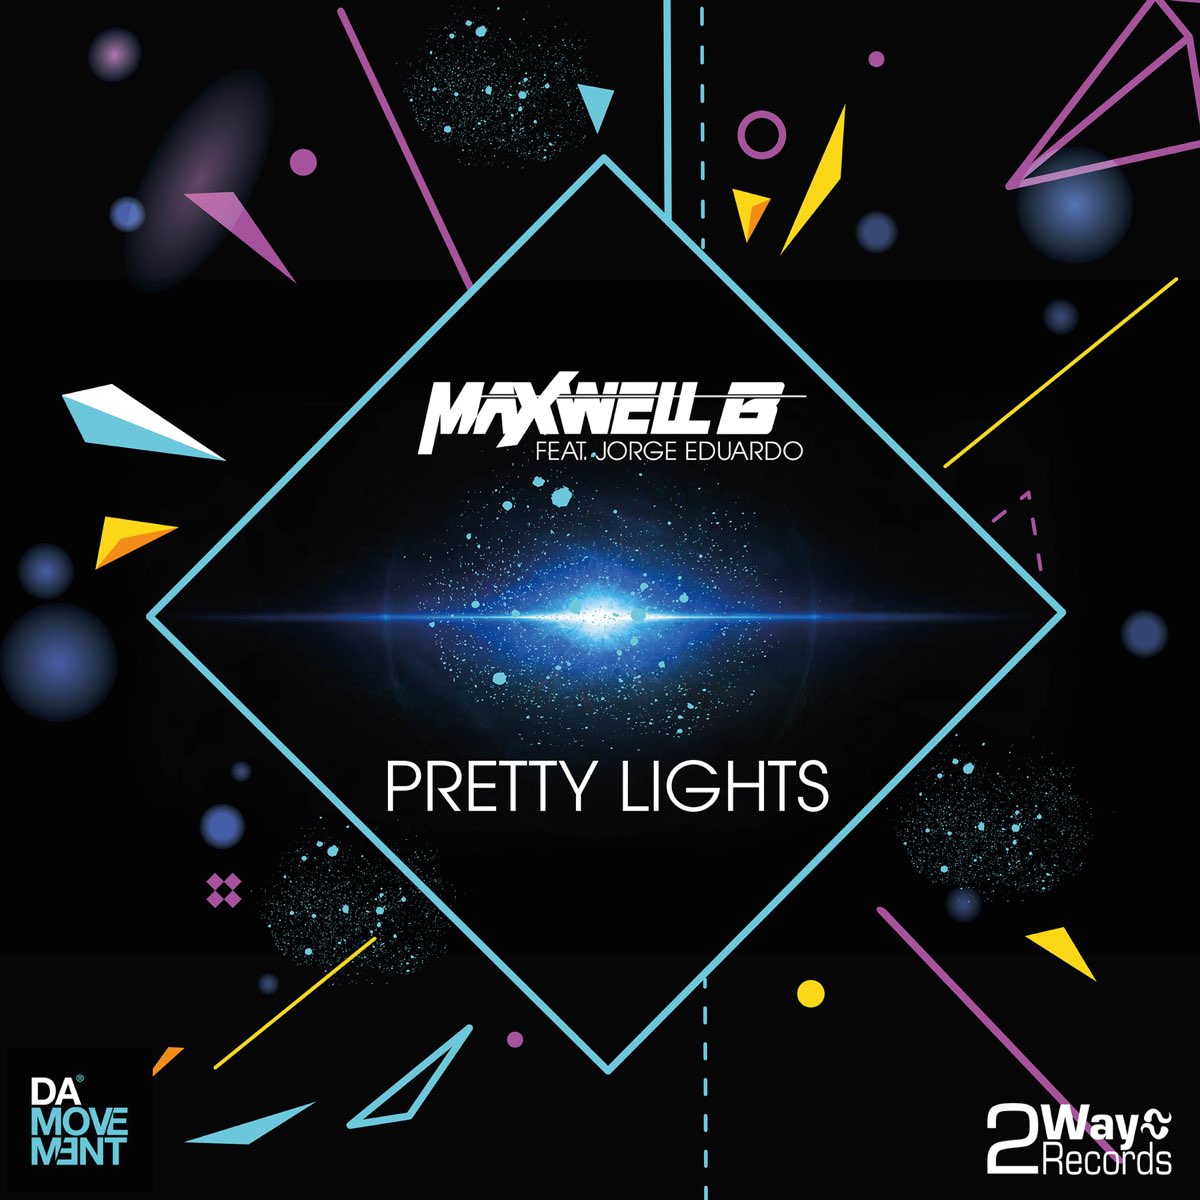 Pretty Lights. JFI pretty Lights. Maxwell feat